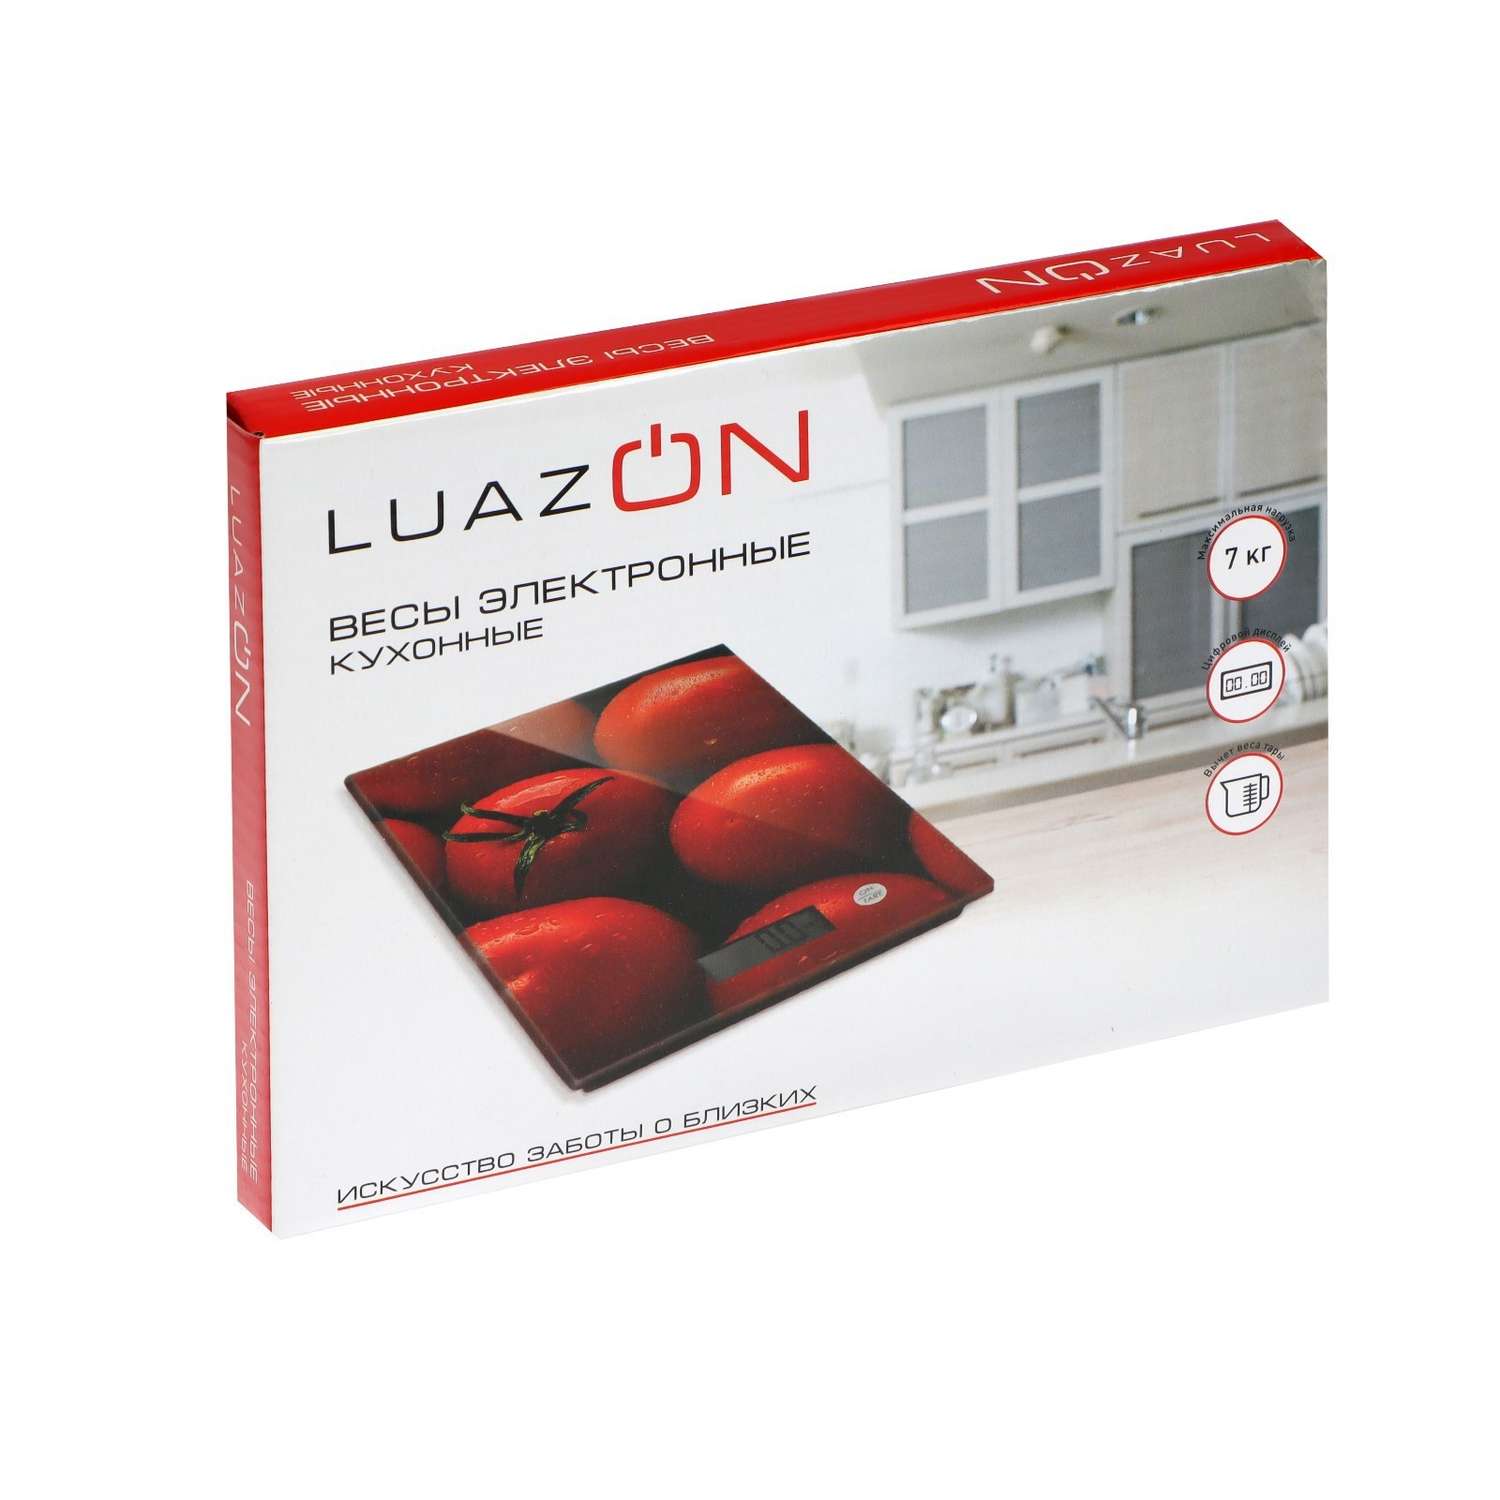 Весы кухонные Luazon Home LVK-702 «Макаруны» электронные до 7 кг - фото 9